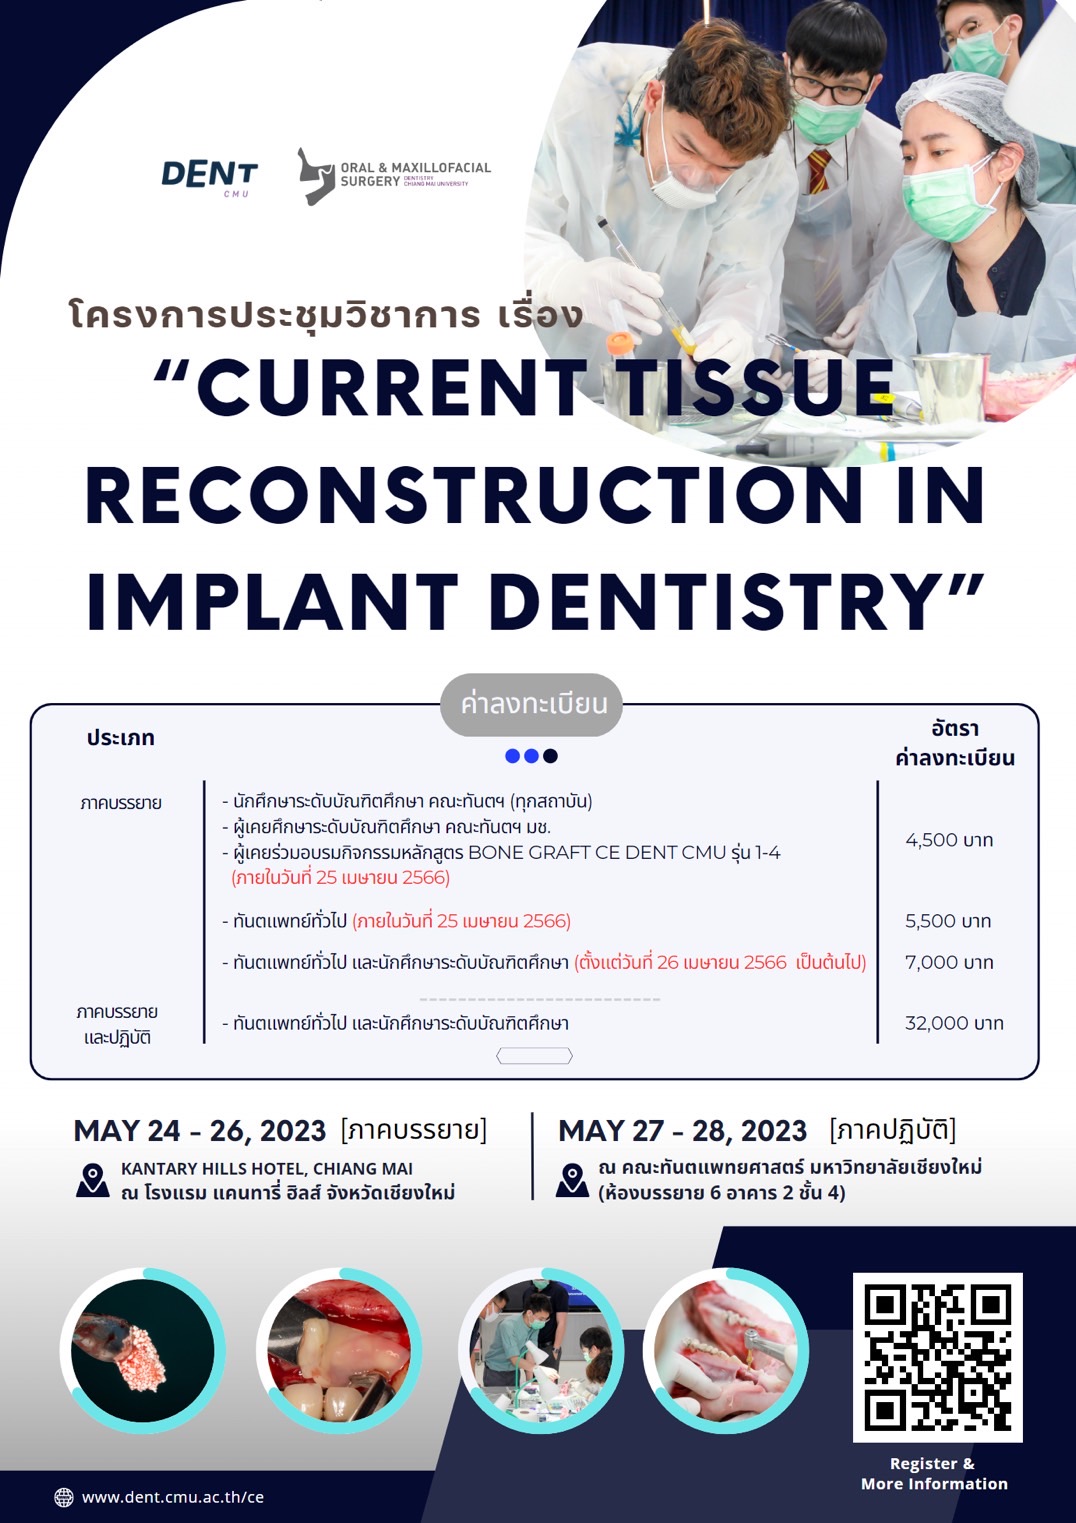 โครงการประชุมวิชาการ OMFS Dentistry CMU CE2023 เรื่อง “Current Tissue Reconstruction in Implant Dentistry” 